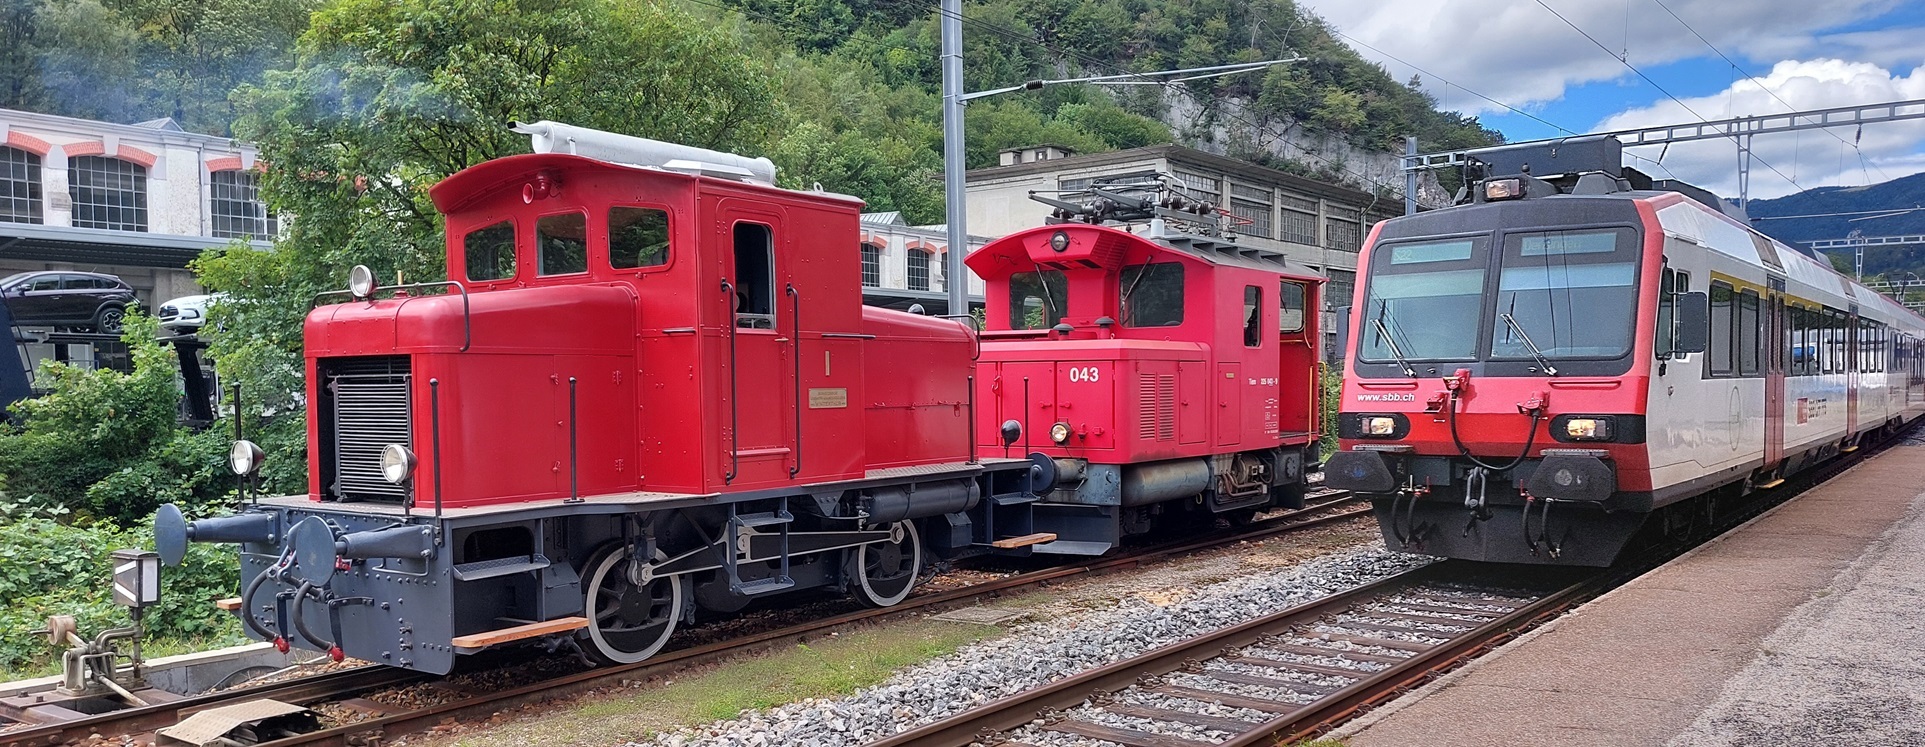 Phönix aus der Asche – die älteste Normalspurdiesellok der Schweiz - Oensingen-Balsthal-Bahn AG